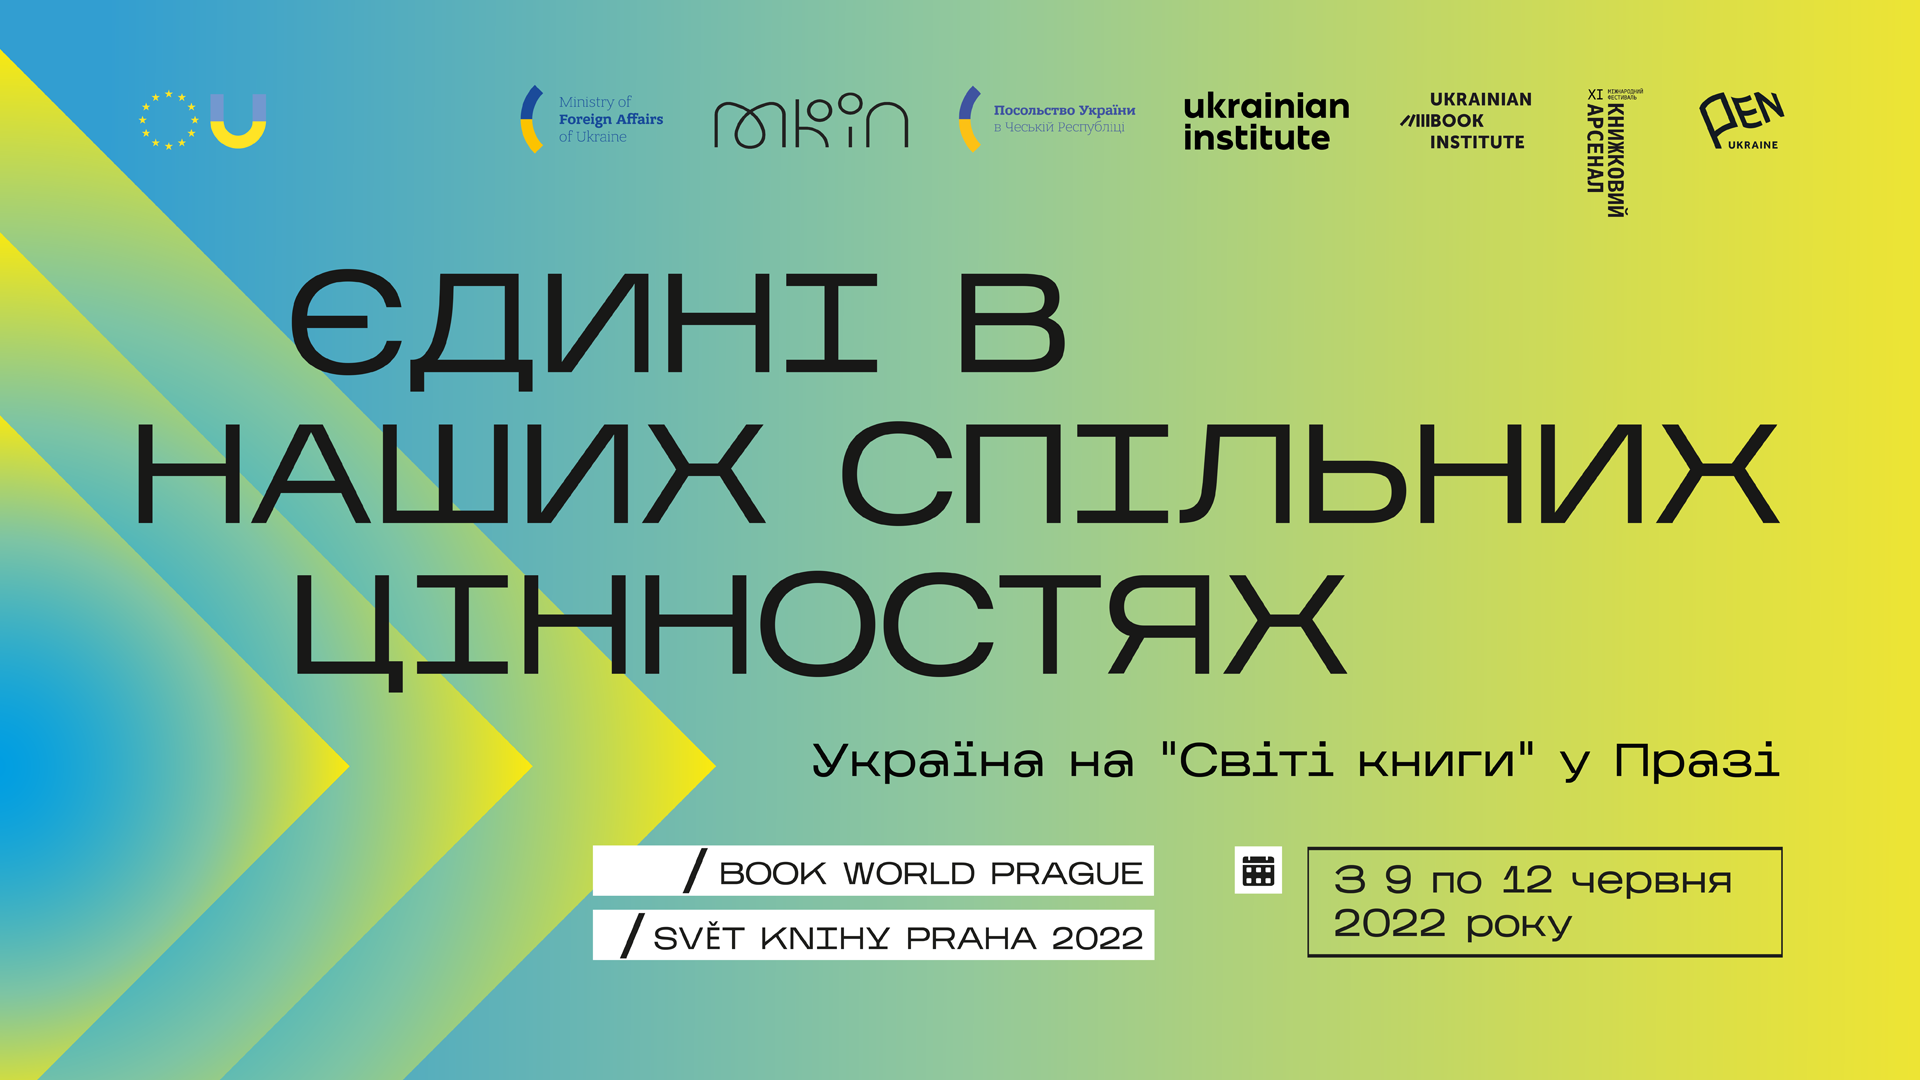 Ukraine at the Book World Prague 1080 10920